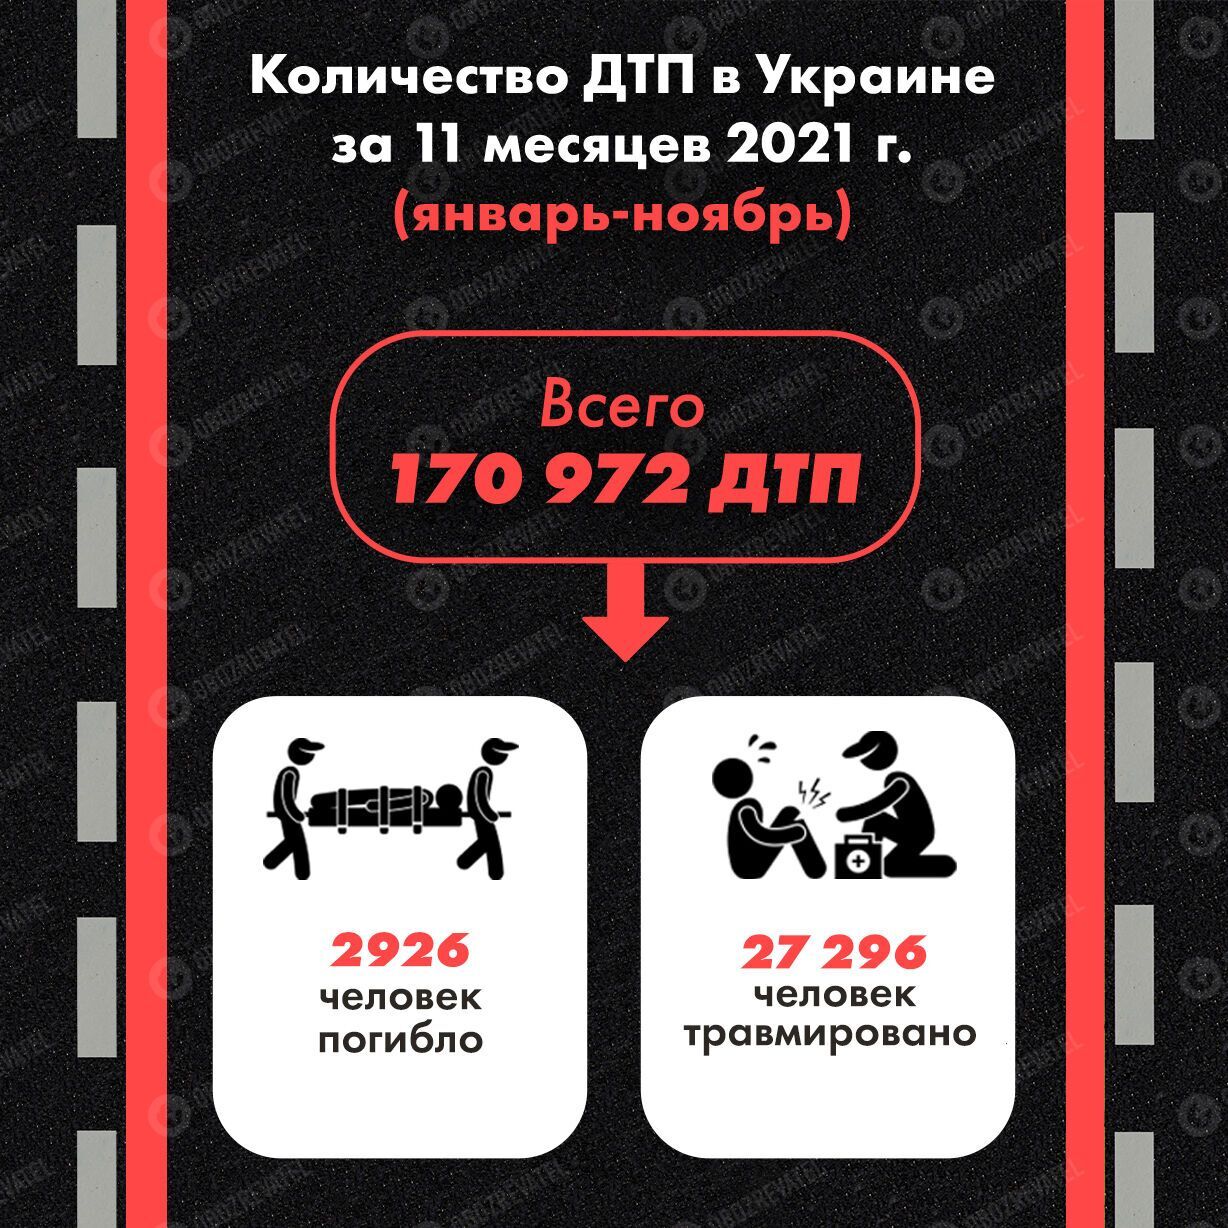 Количество ДТП в Украине